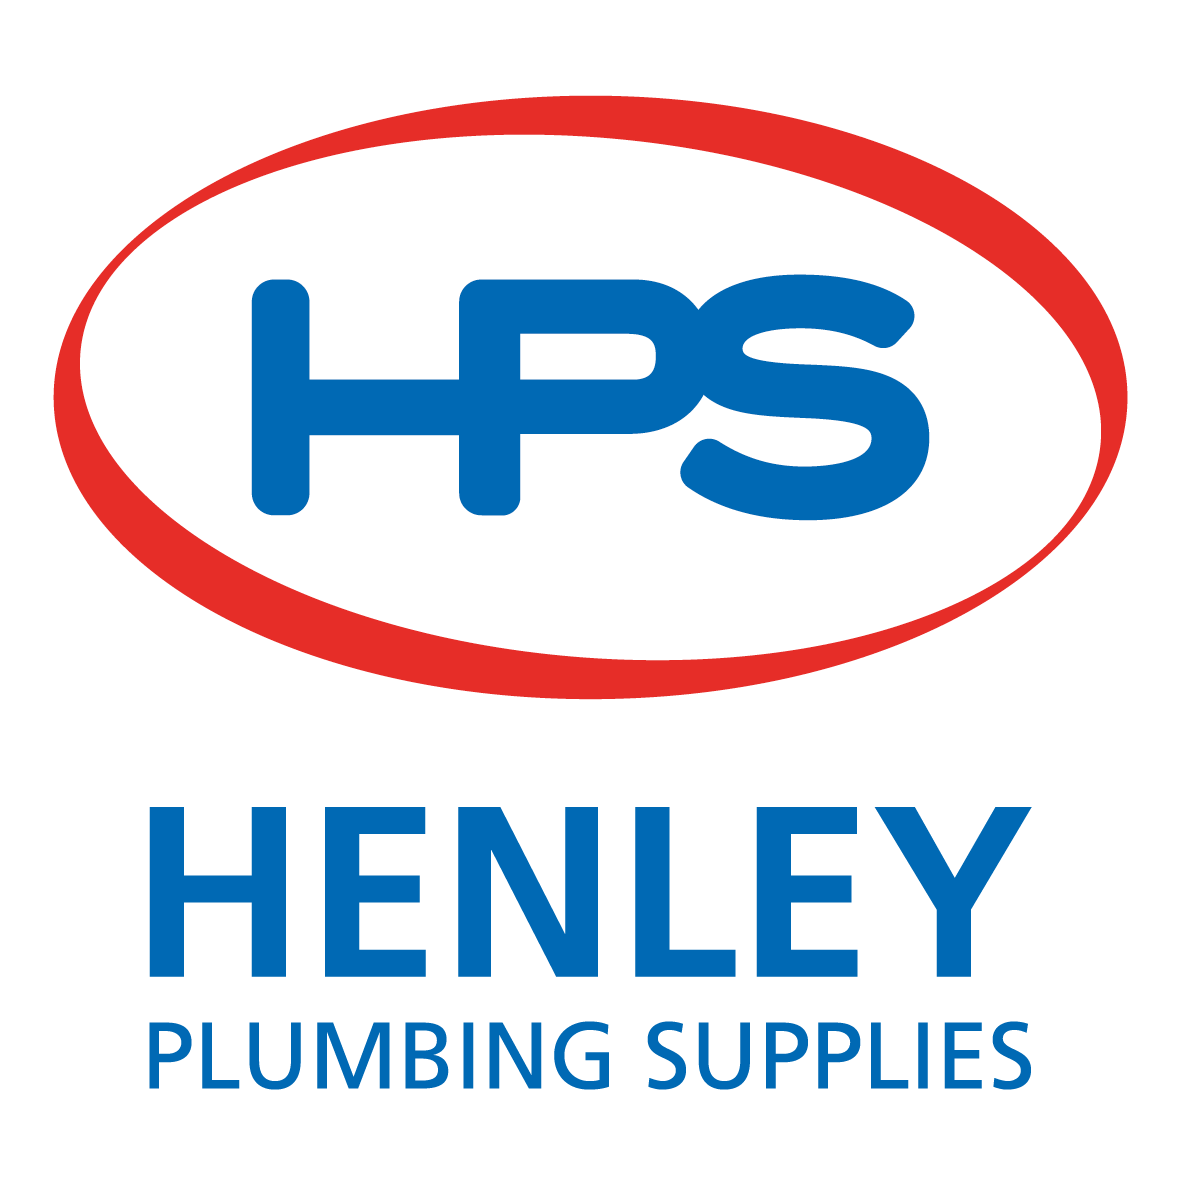 Henley Plumbing Supplies